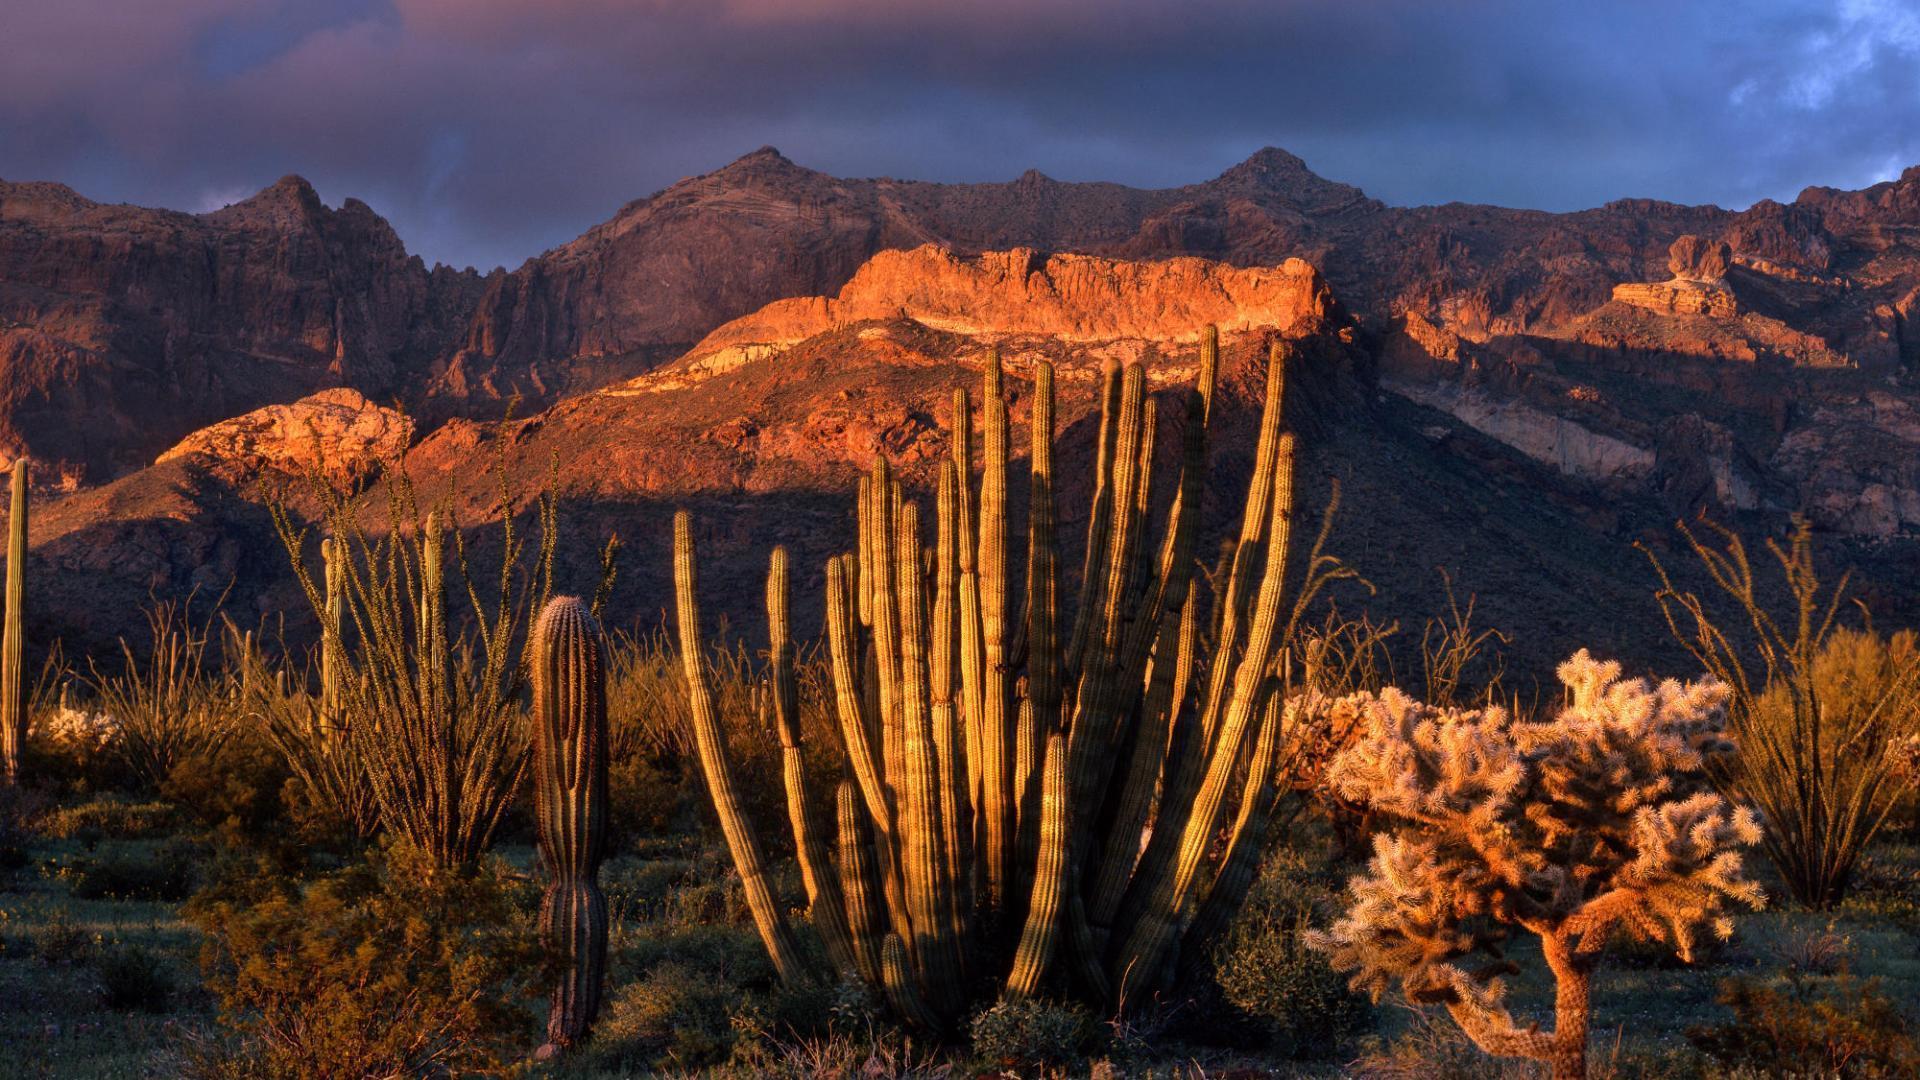 HD Organ Pipe Cactus National Park In Arizona Wallpaper. Download